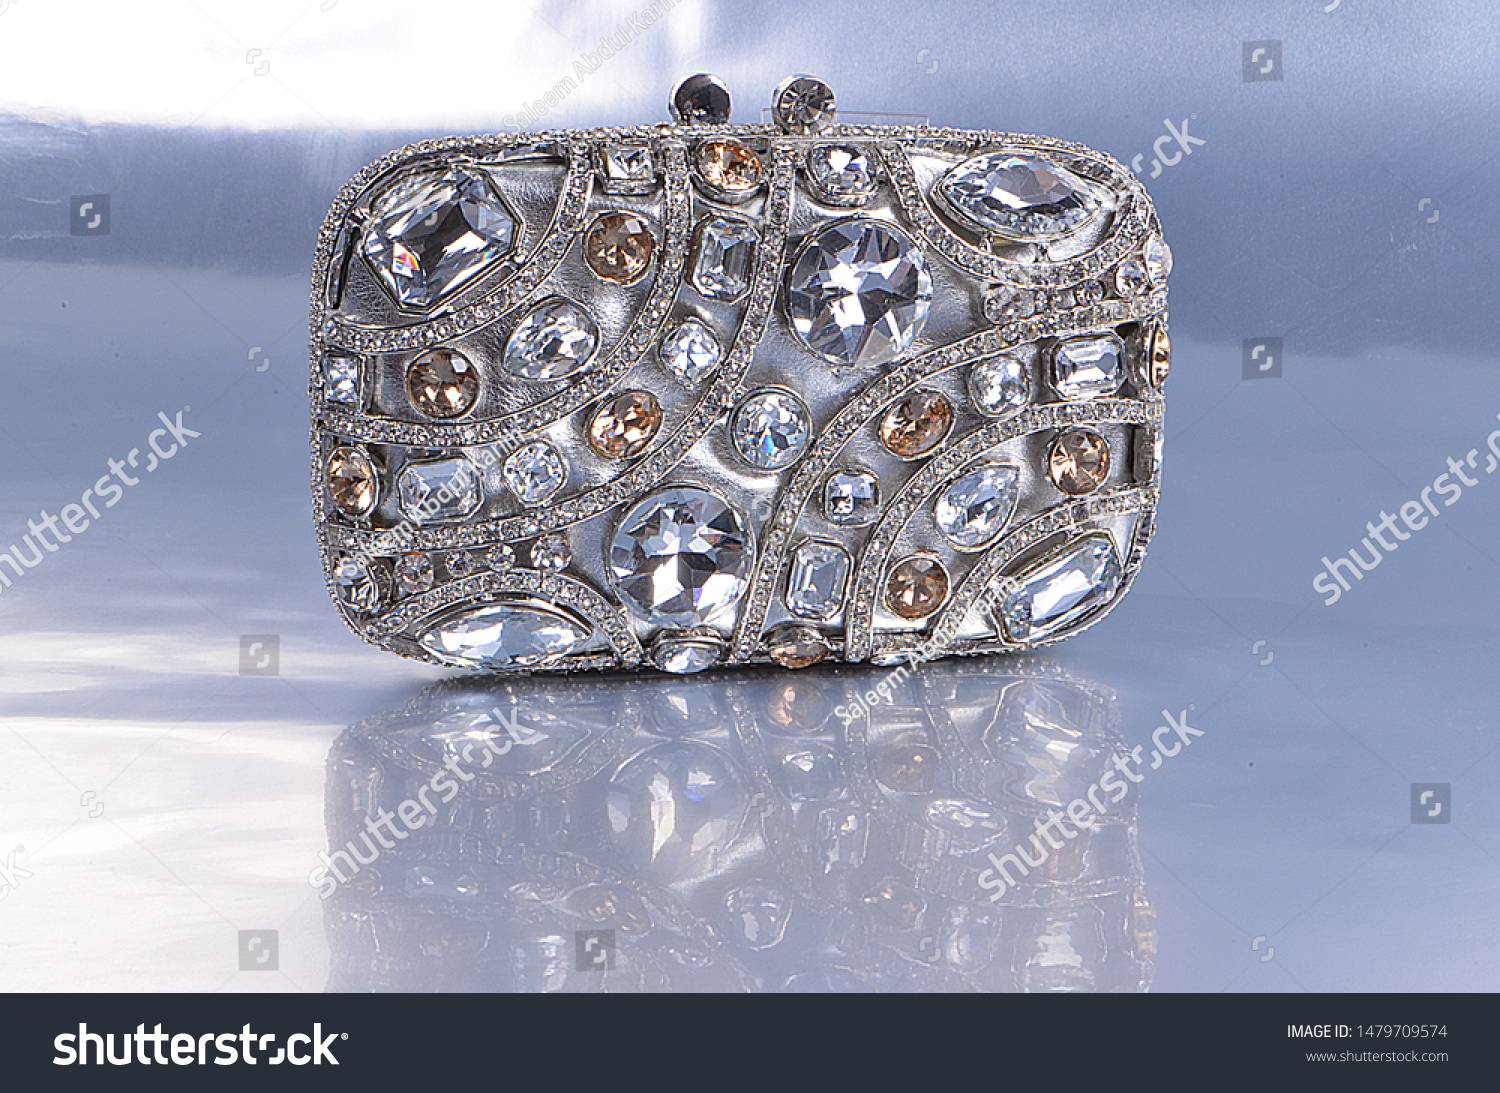 diamond clutch purse